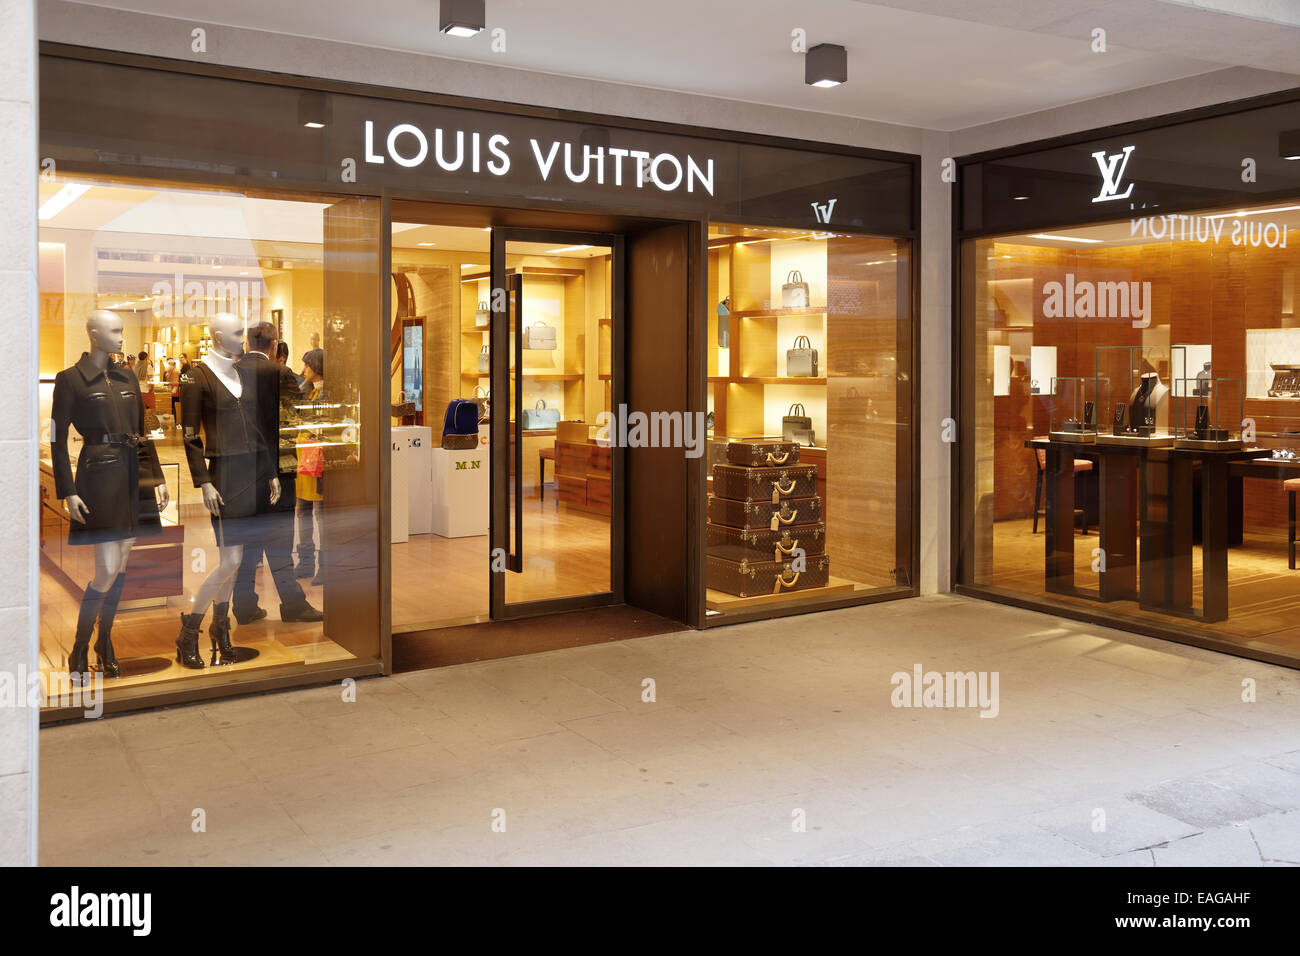 Il negozio Louis Vuitton a Venezia, Italia Foto & Immagine Stock: 75347595 - Alamy